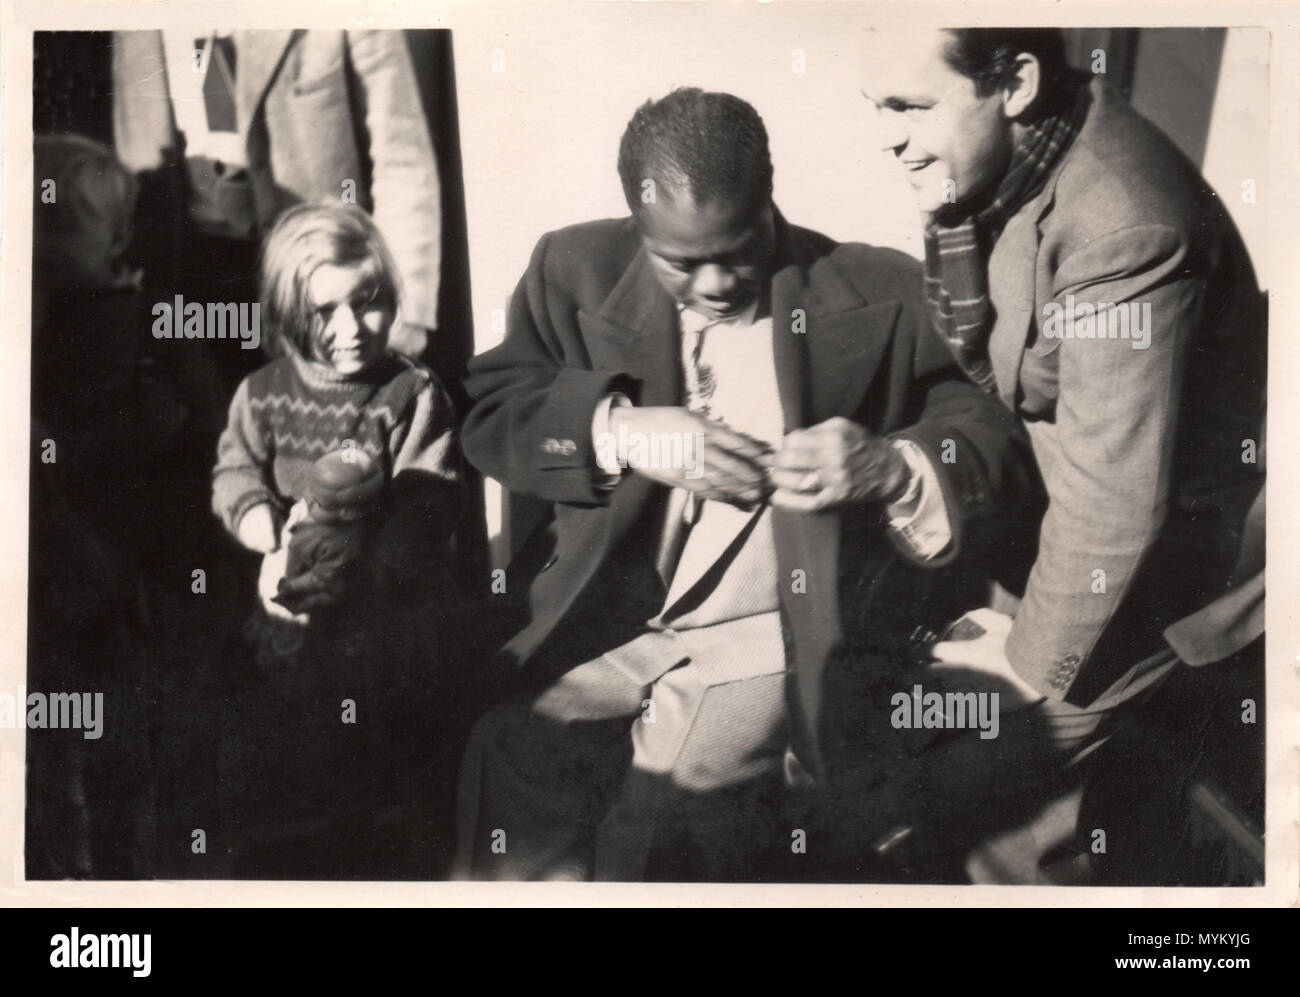 Unica fotografia informale di Louis Armstrong con uomo sorridente e la bambina stringe la bambola. Fotografia proviene da un danese del musicista album privato e fu probabilmente realizzata nel 1933 quando Armstrong ha giocato a Copenaghen con musicisti locali, incluso l'uomo sulla destra. La bambina è sua figlia; purtroppo i loro nomi non sono registrate. Foto Stock